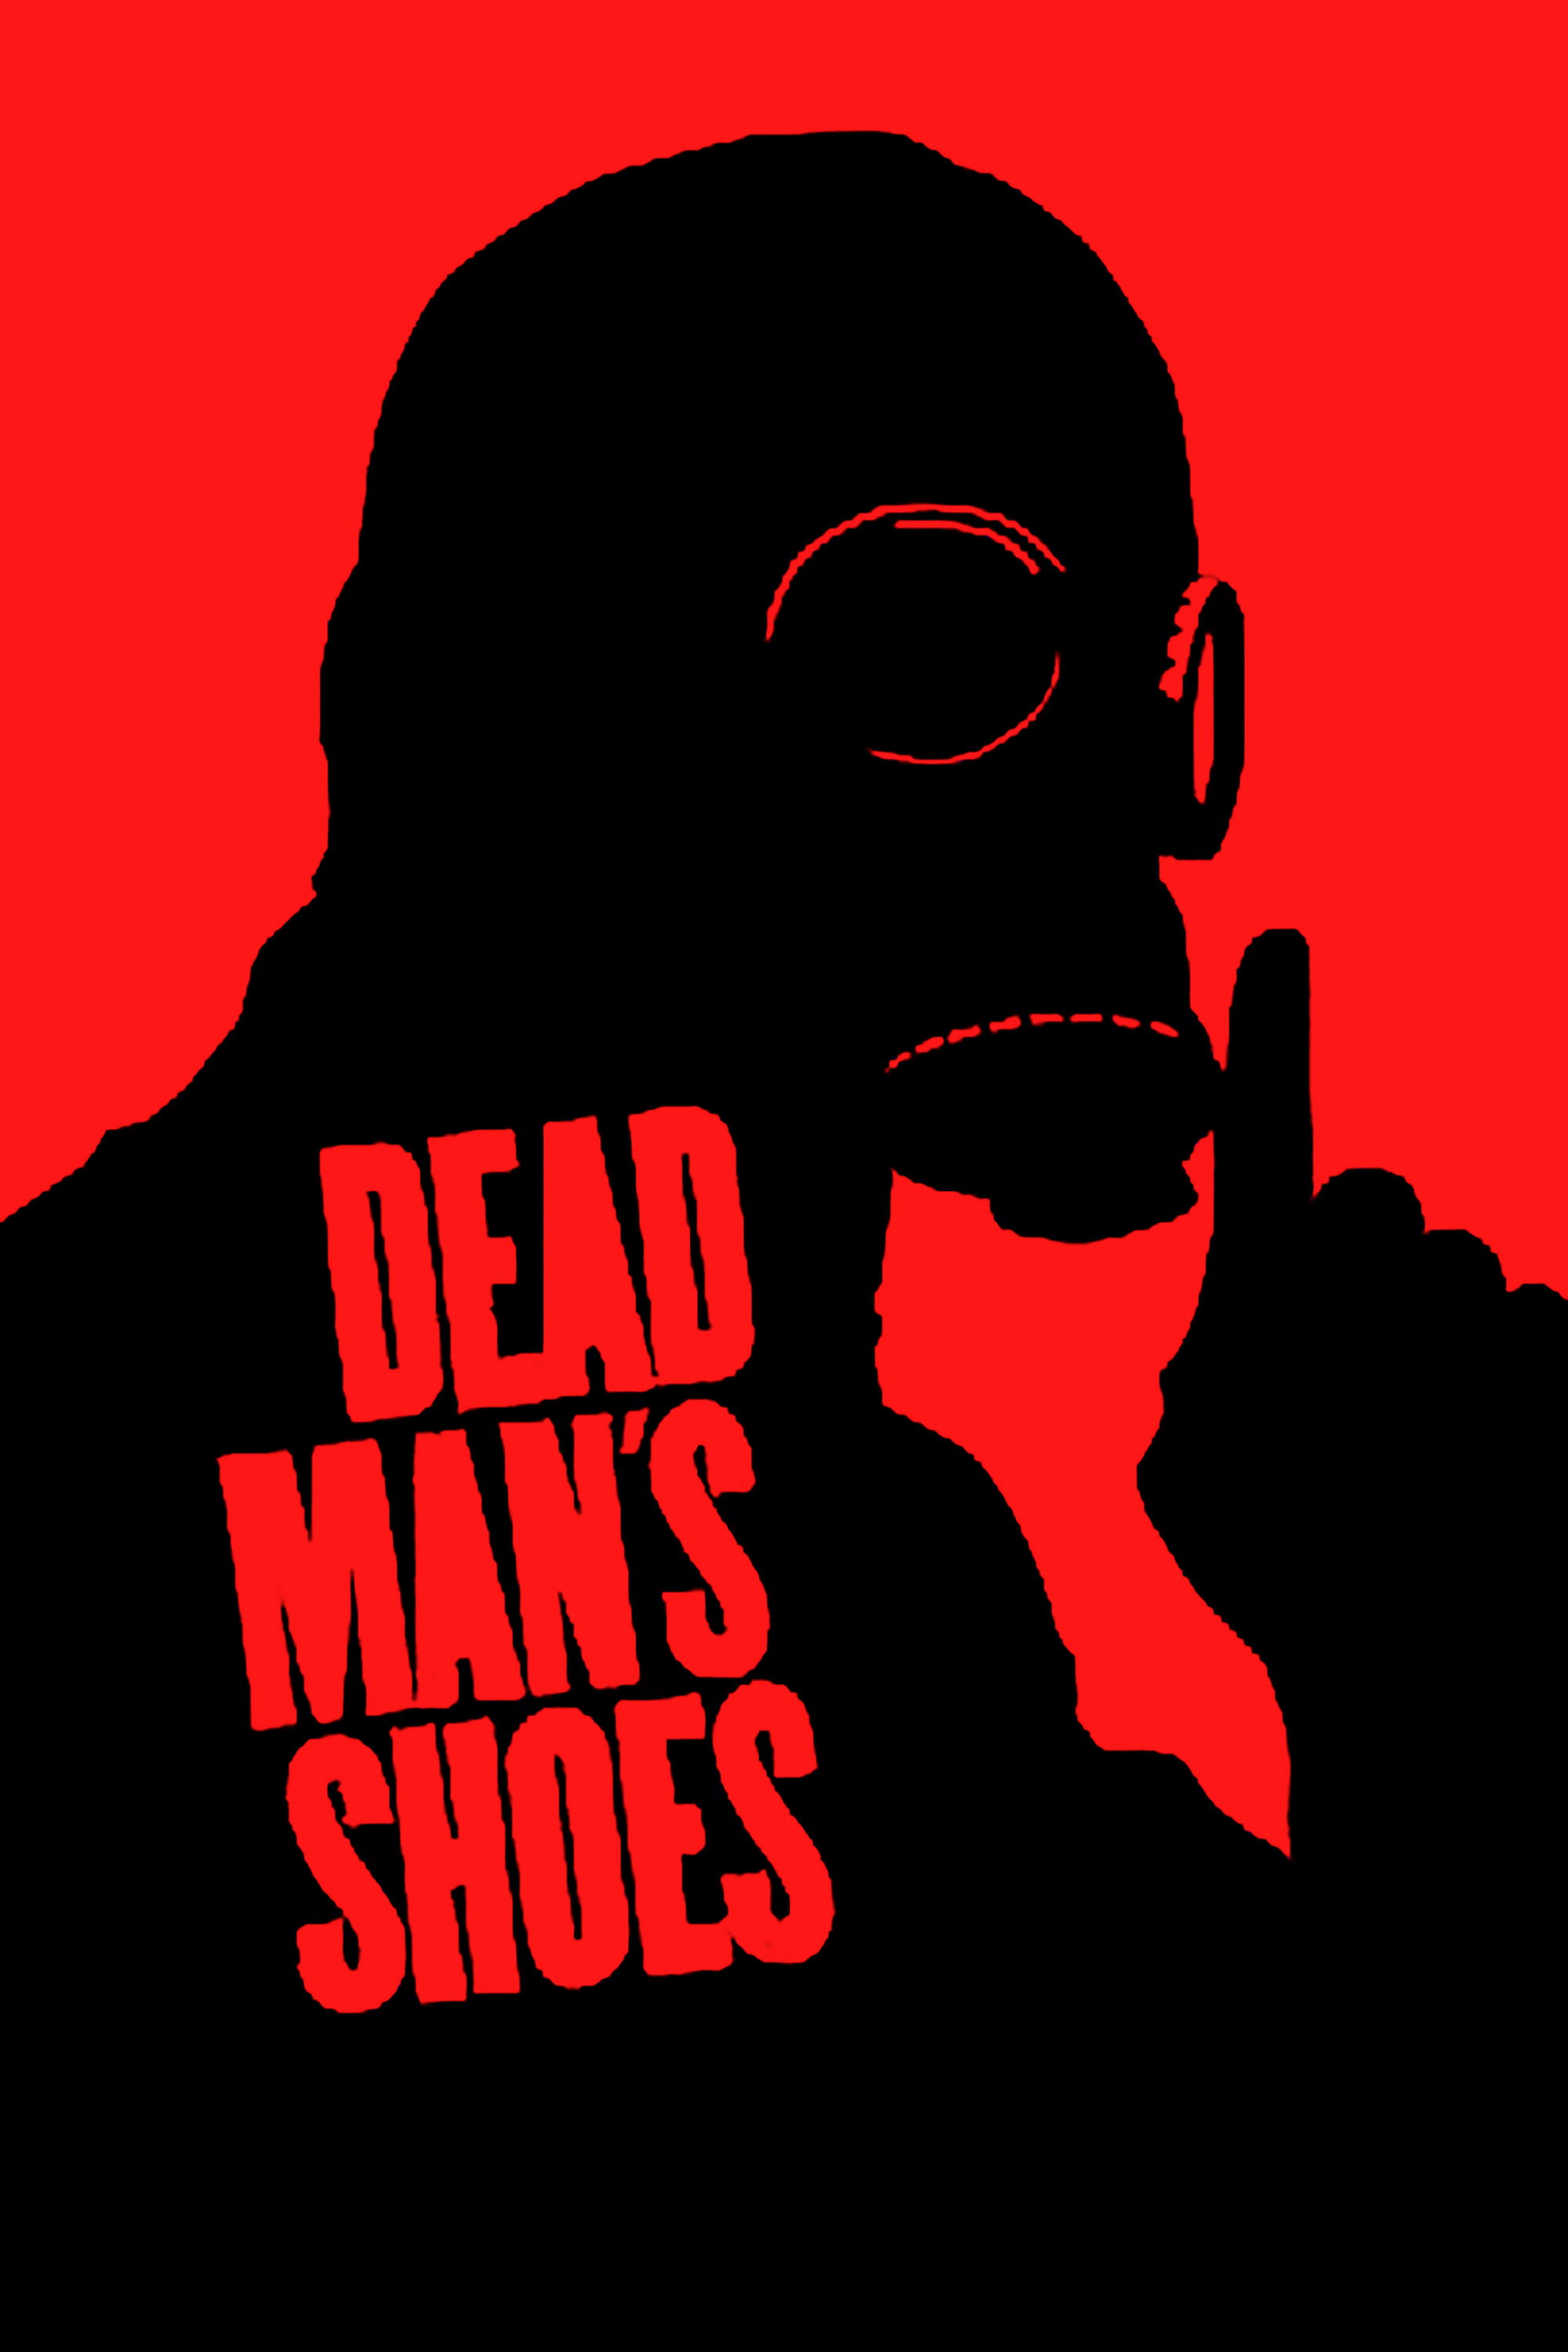 Giày Của Người Chết - Dead Man's Shoes